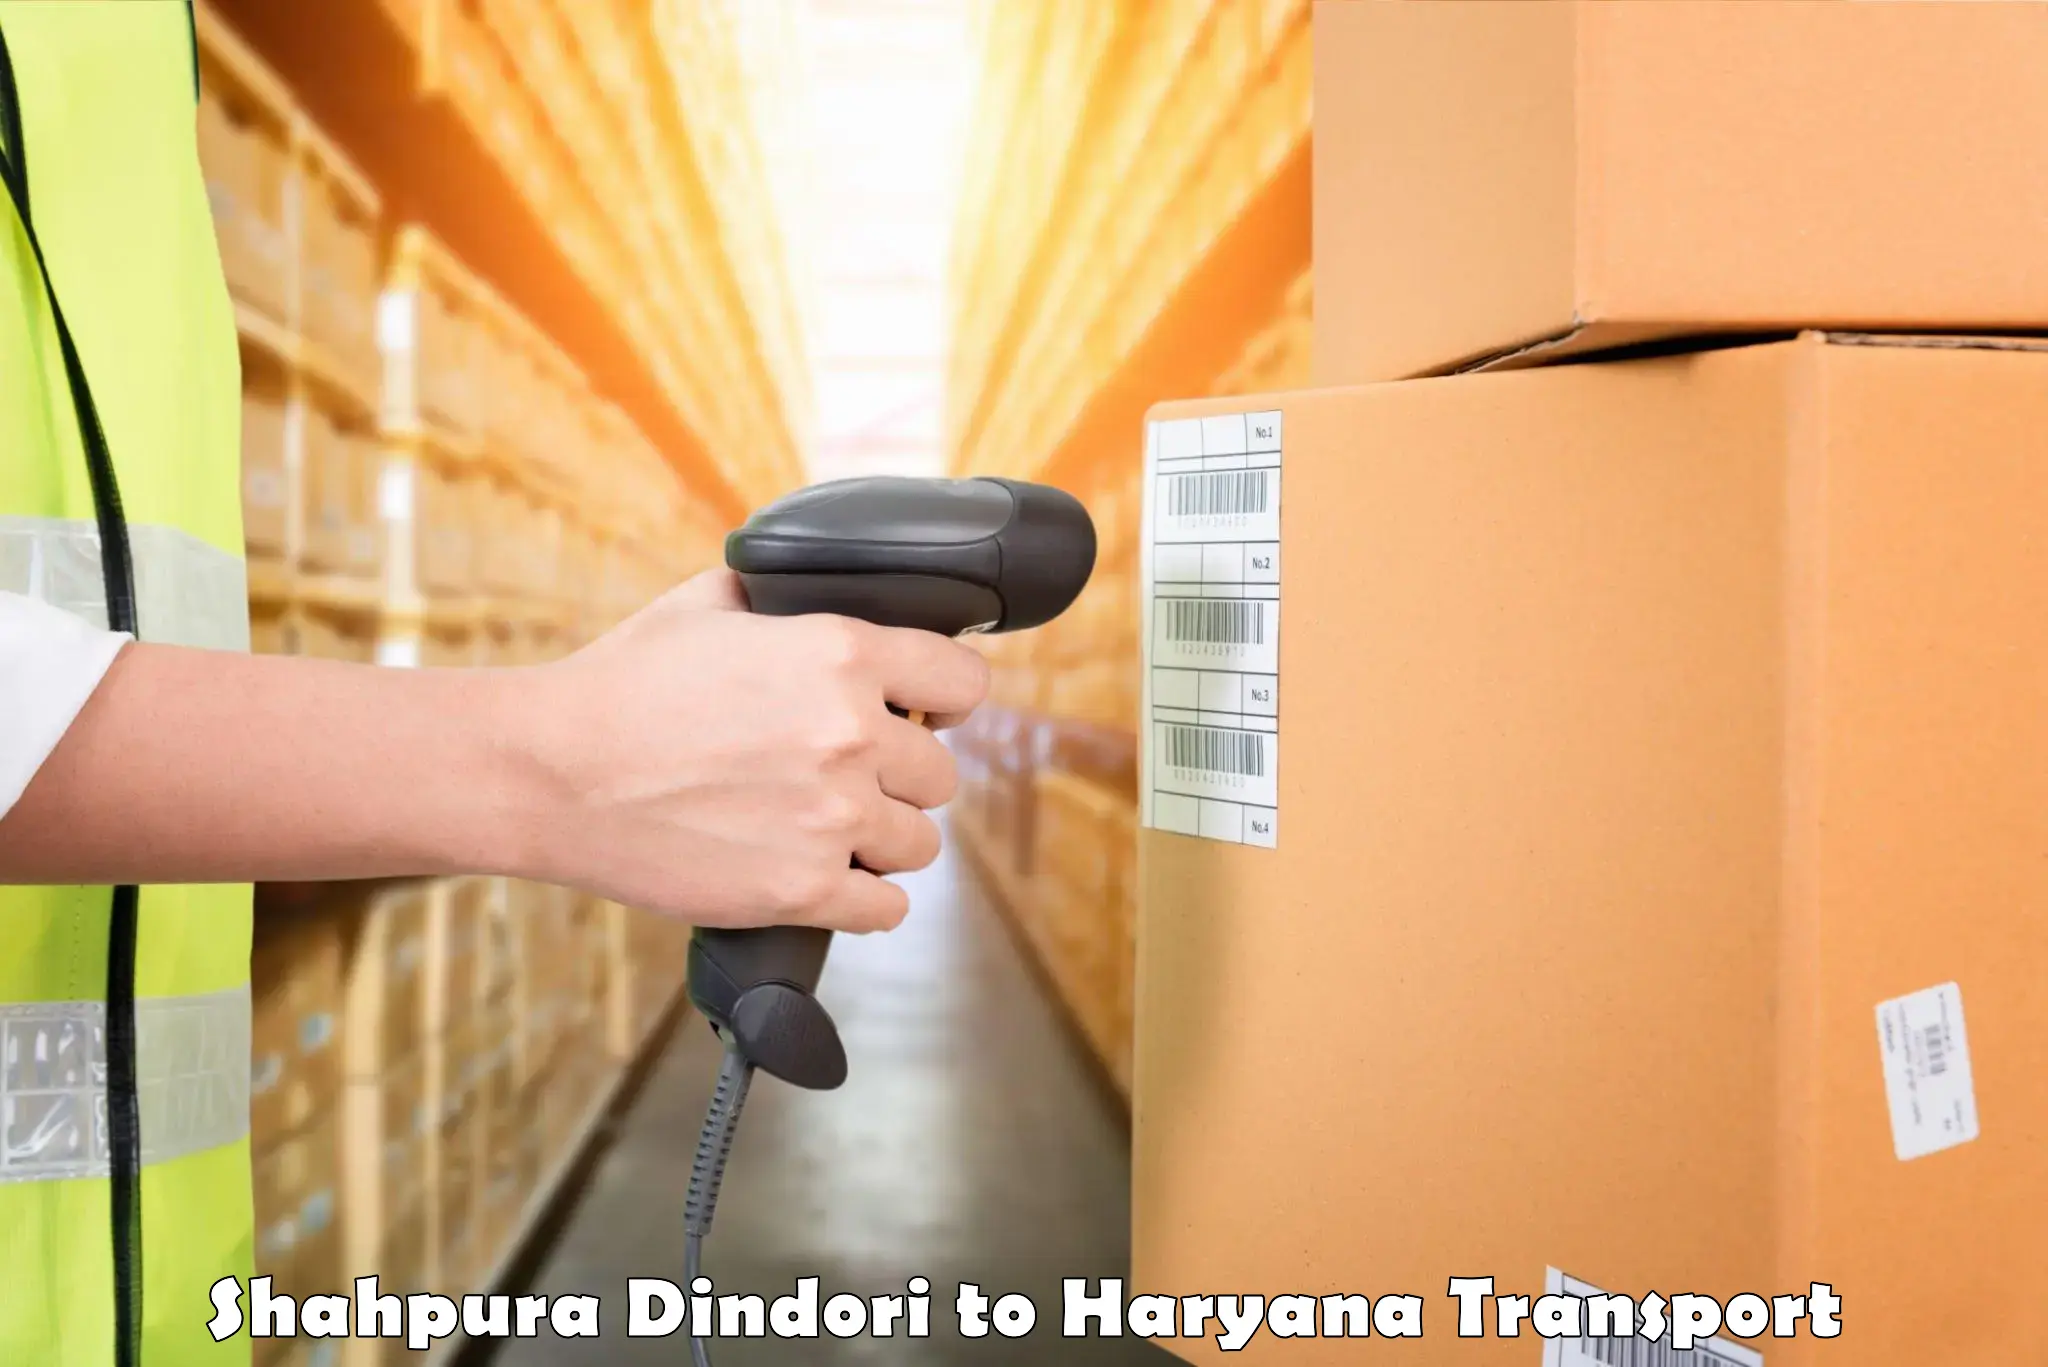 Container transport service Shahpura Dindori to Gurugram